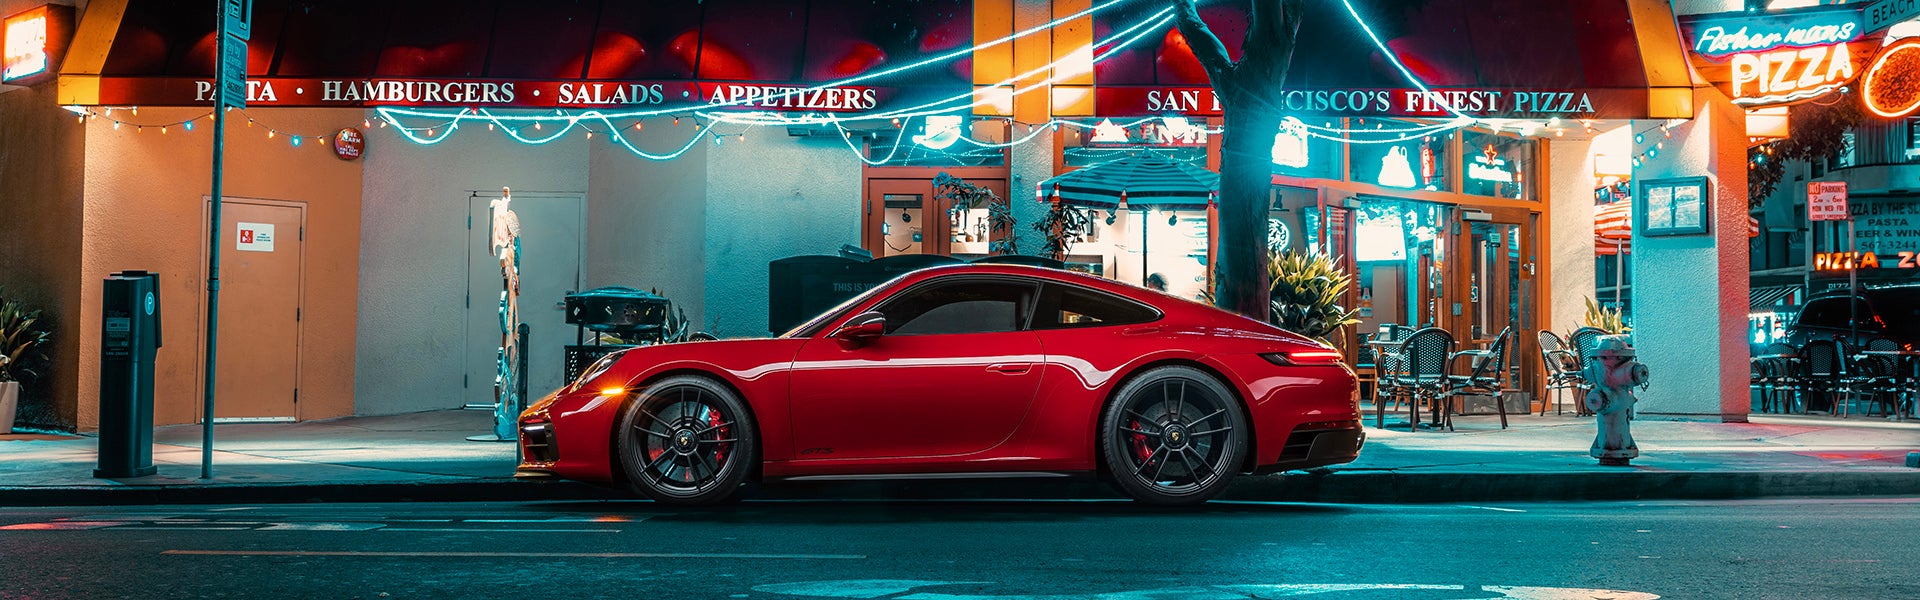 Porsche San Francisco in San Francisco CA